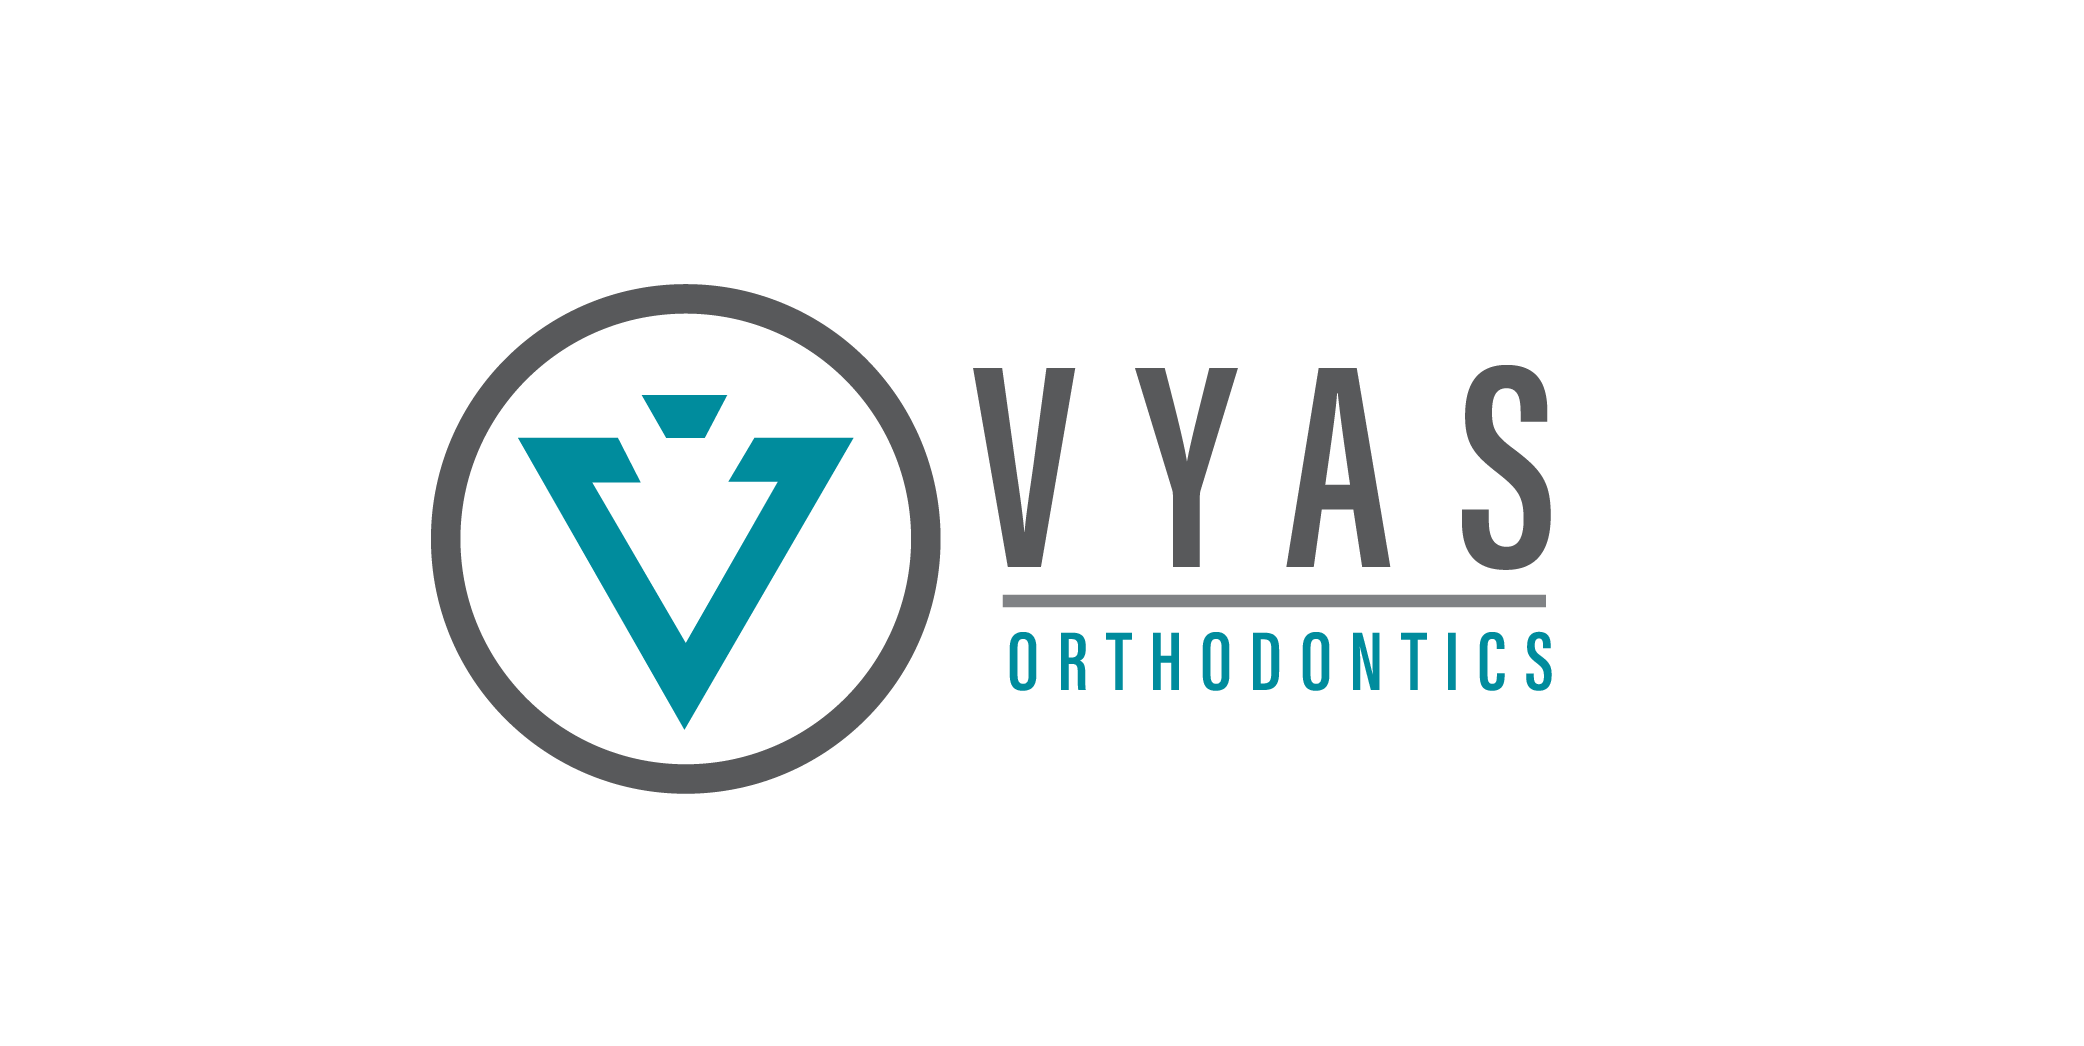 Sponsor Vyas Orthodontics